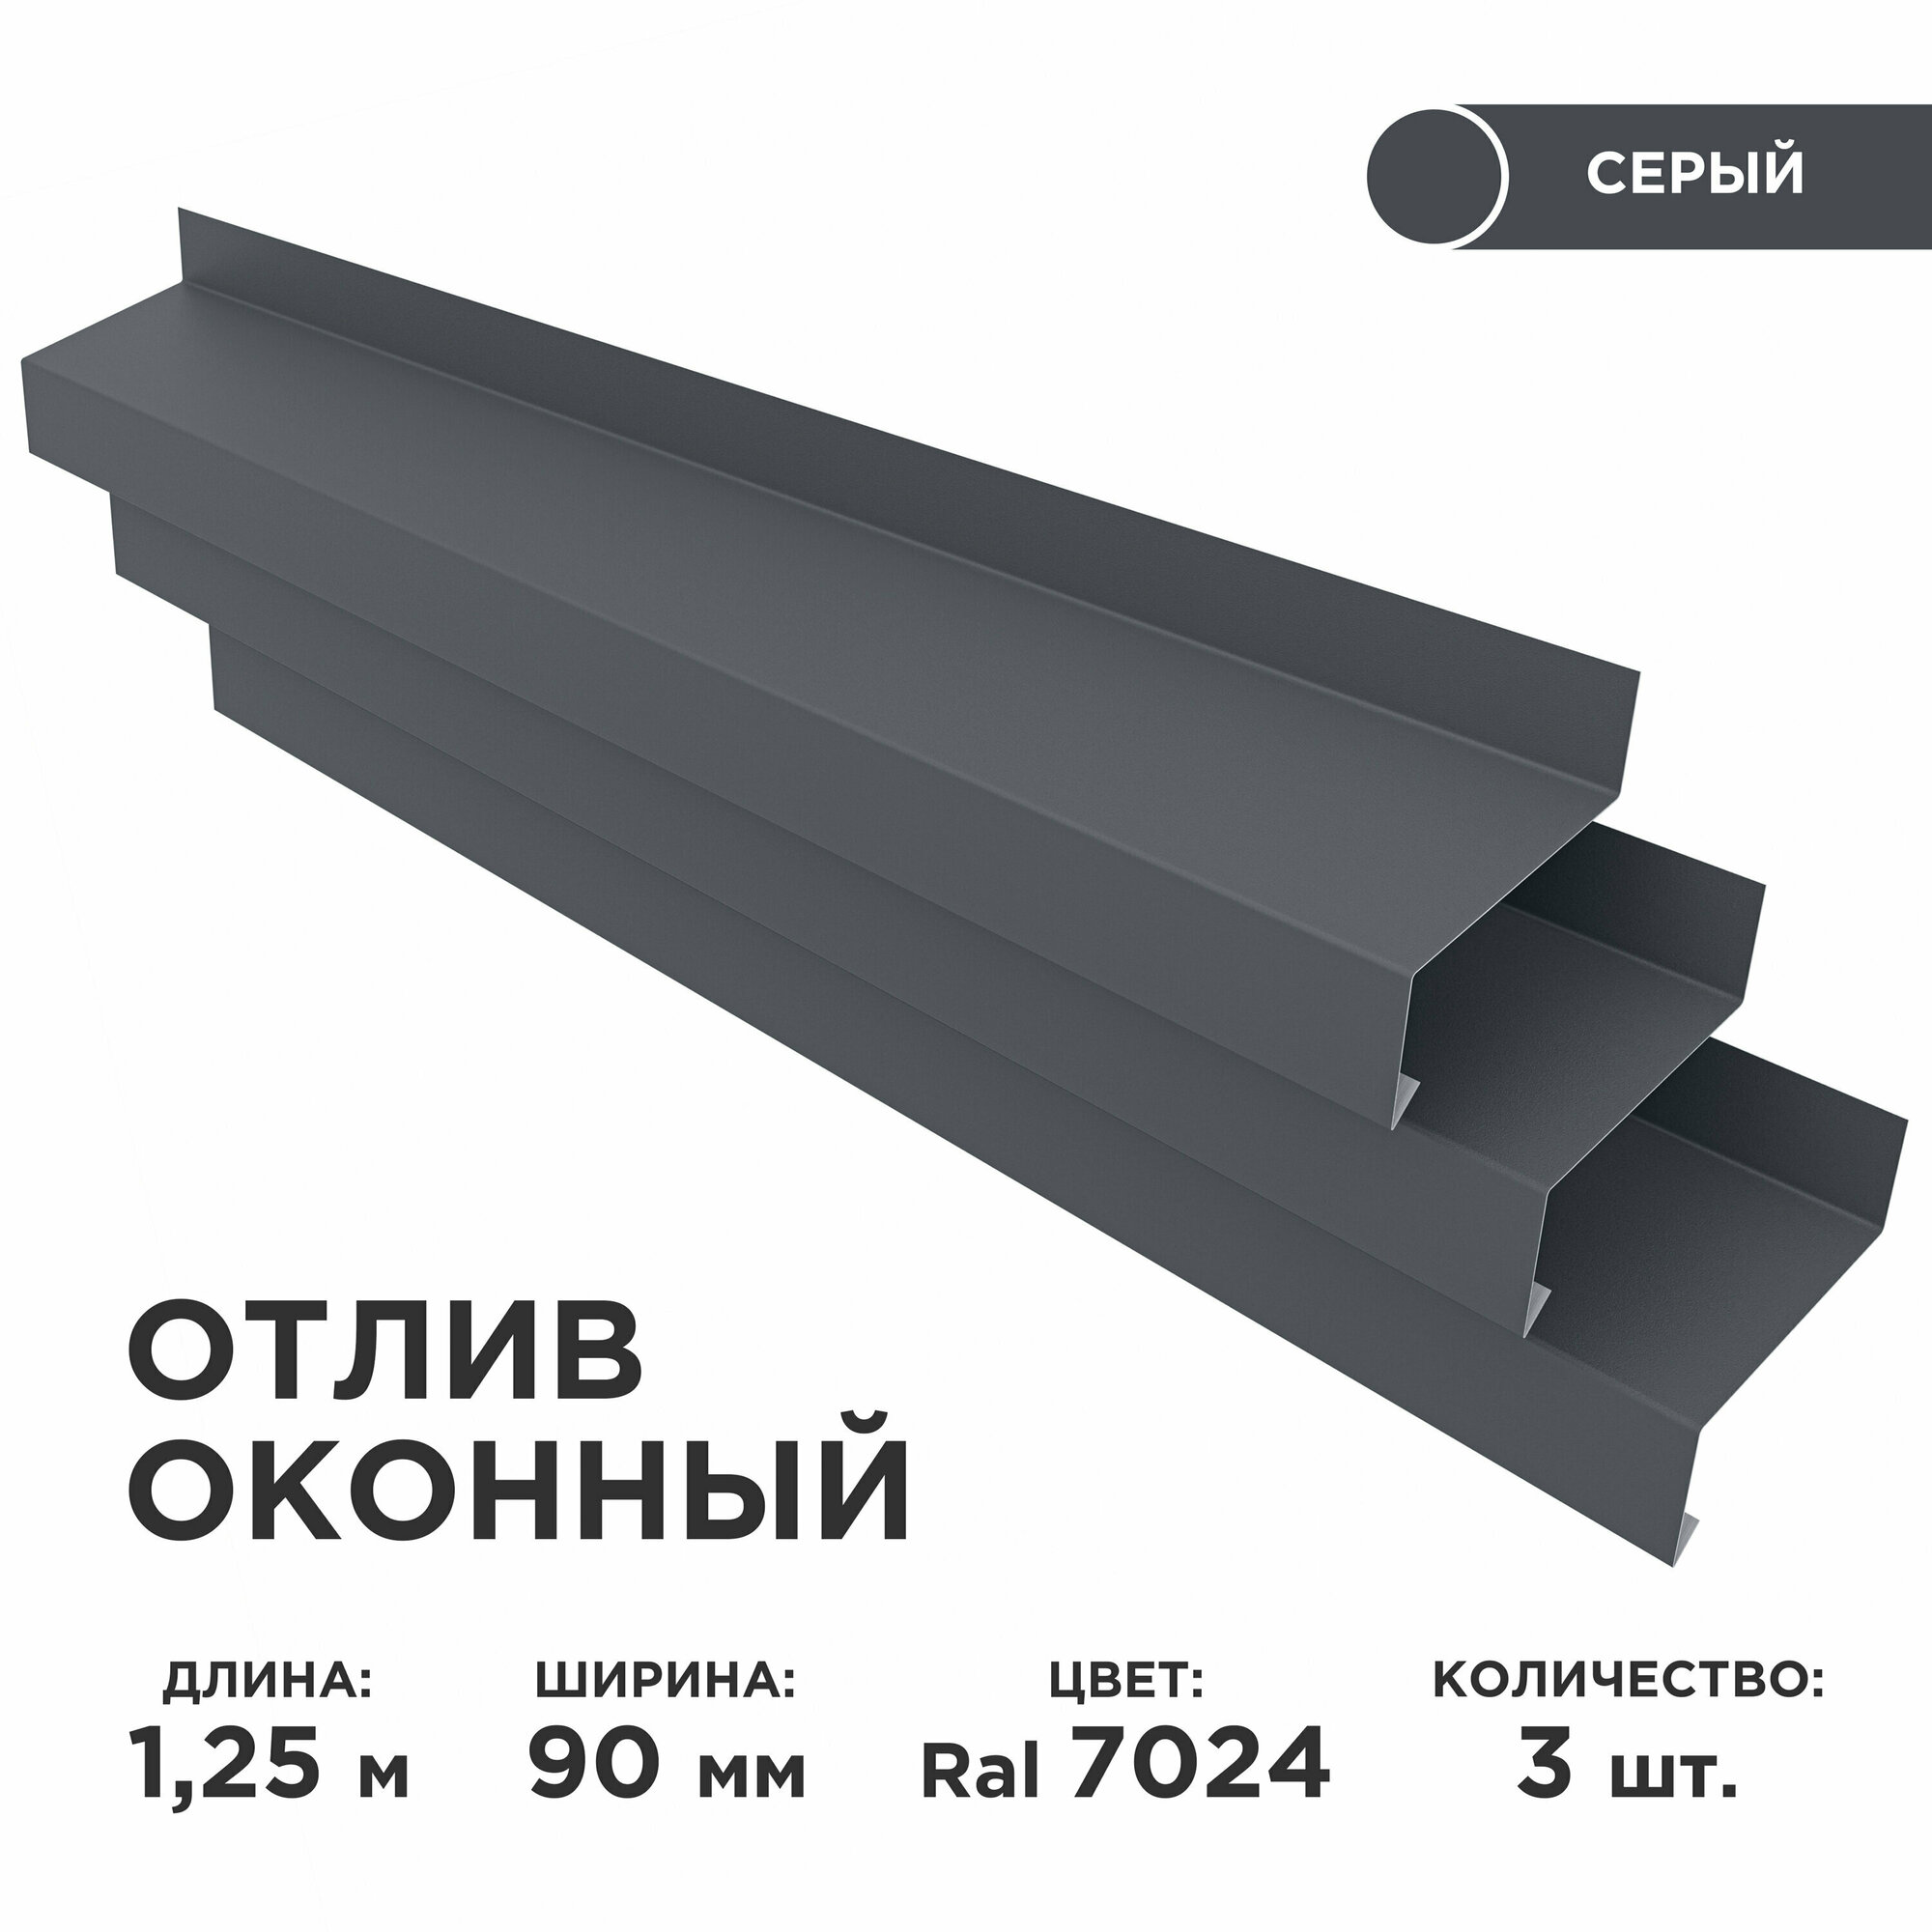 Отлив оконный ширина полки 90мм/ отлив для окна / цвет серый(RAL 7024) Длина 1,25м, 3 штуки в комплекте